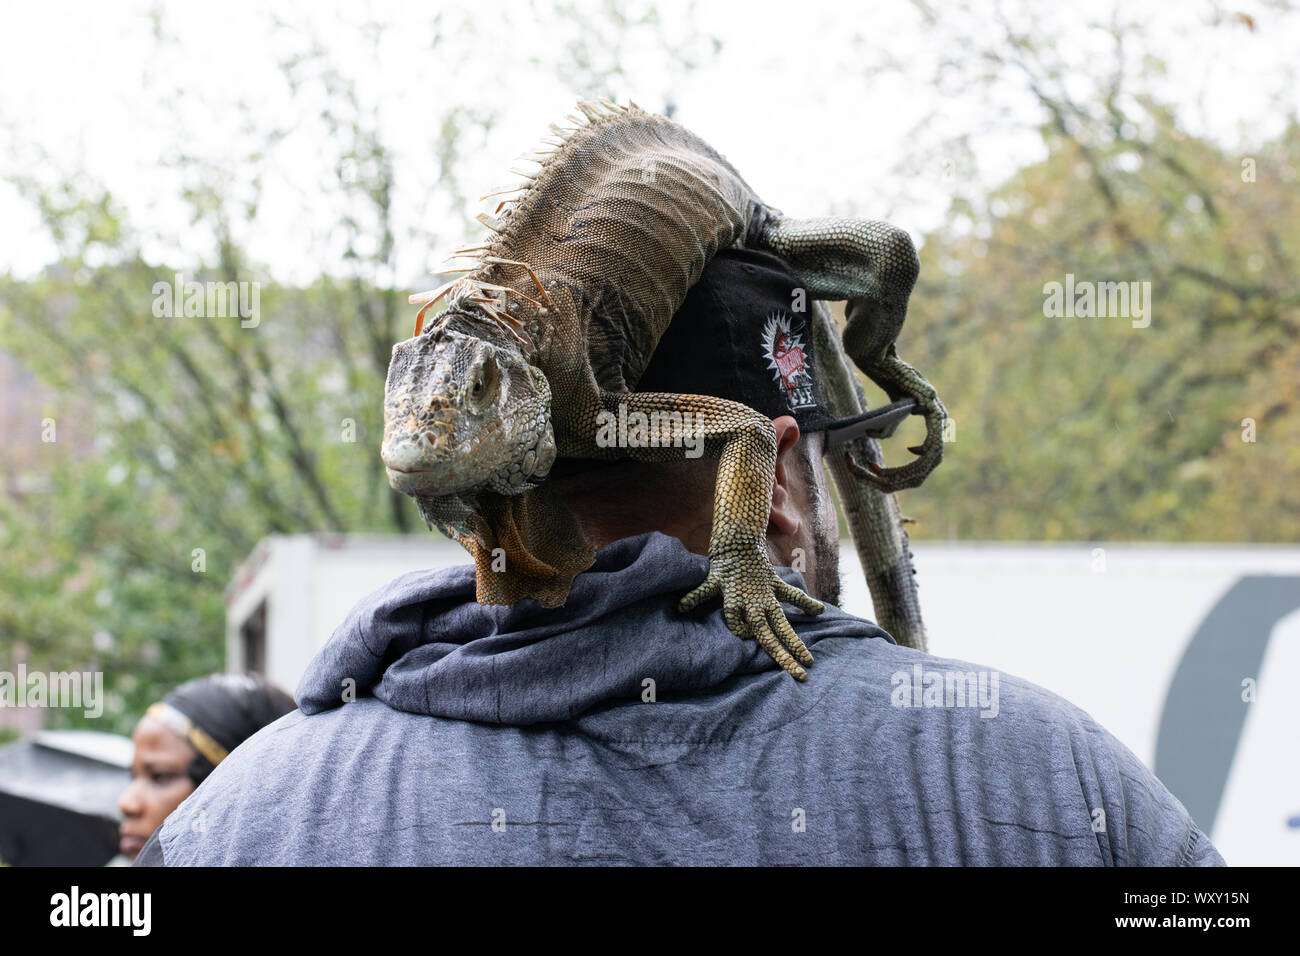 Ein Mann hat sich einen Leguan auf seinen Kopf gelegt und posiert damit vor der Kamera Der Mann ist von hinten zu sehen, der Leguan ist vorn vorne zu Stock Photo